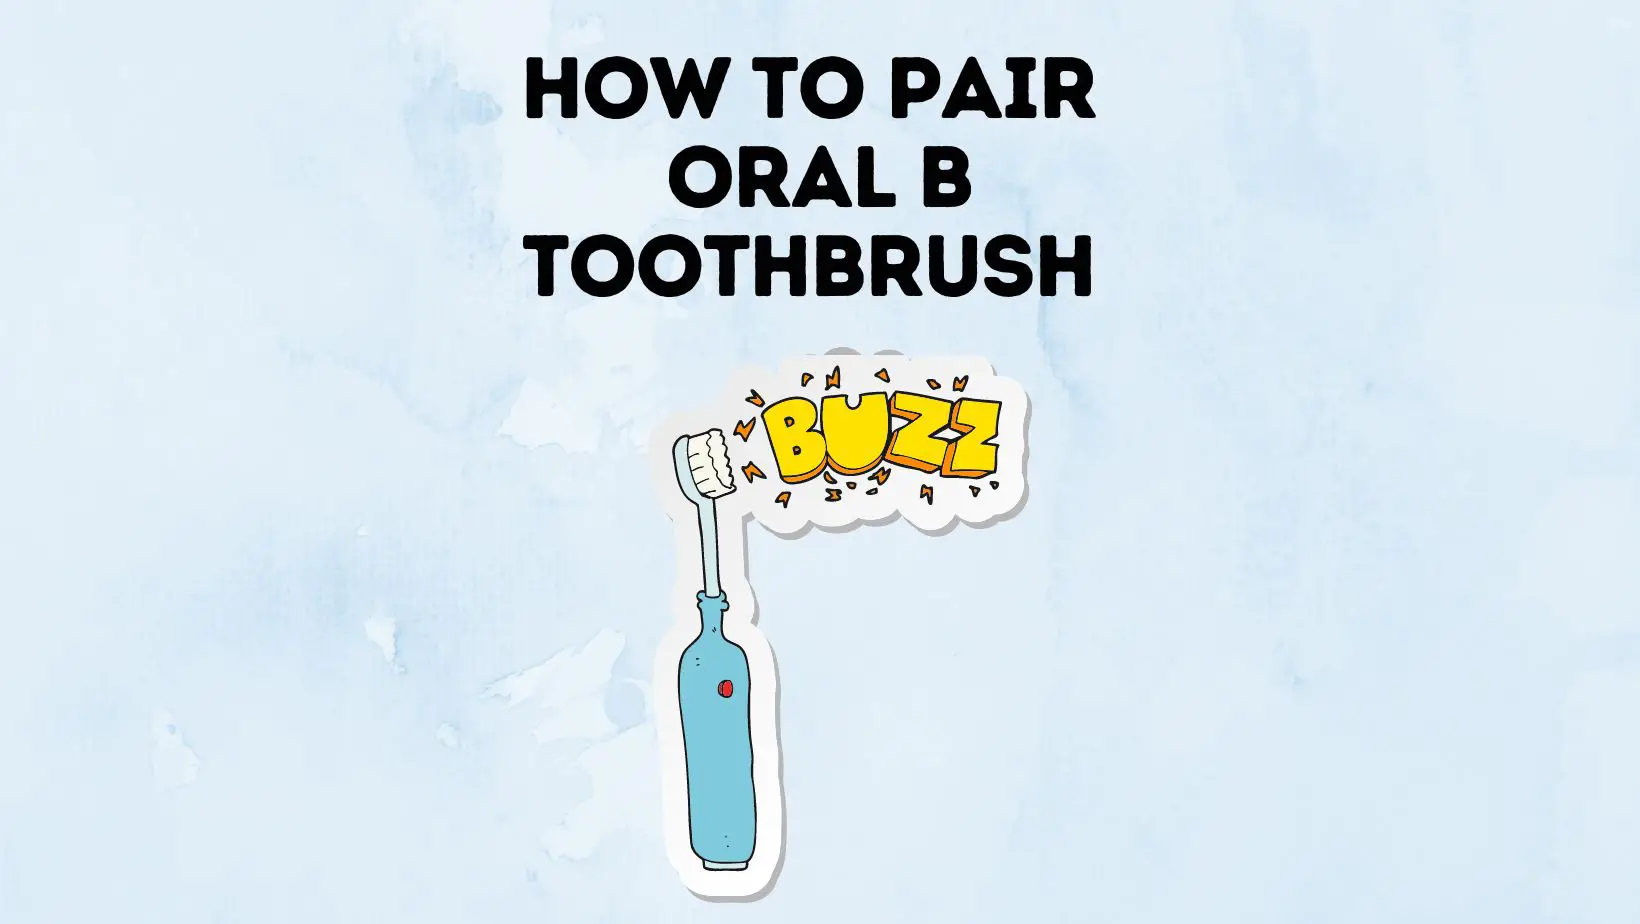 Oral B Toothbrush Pairing Guide